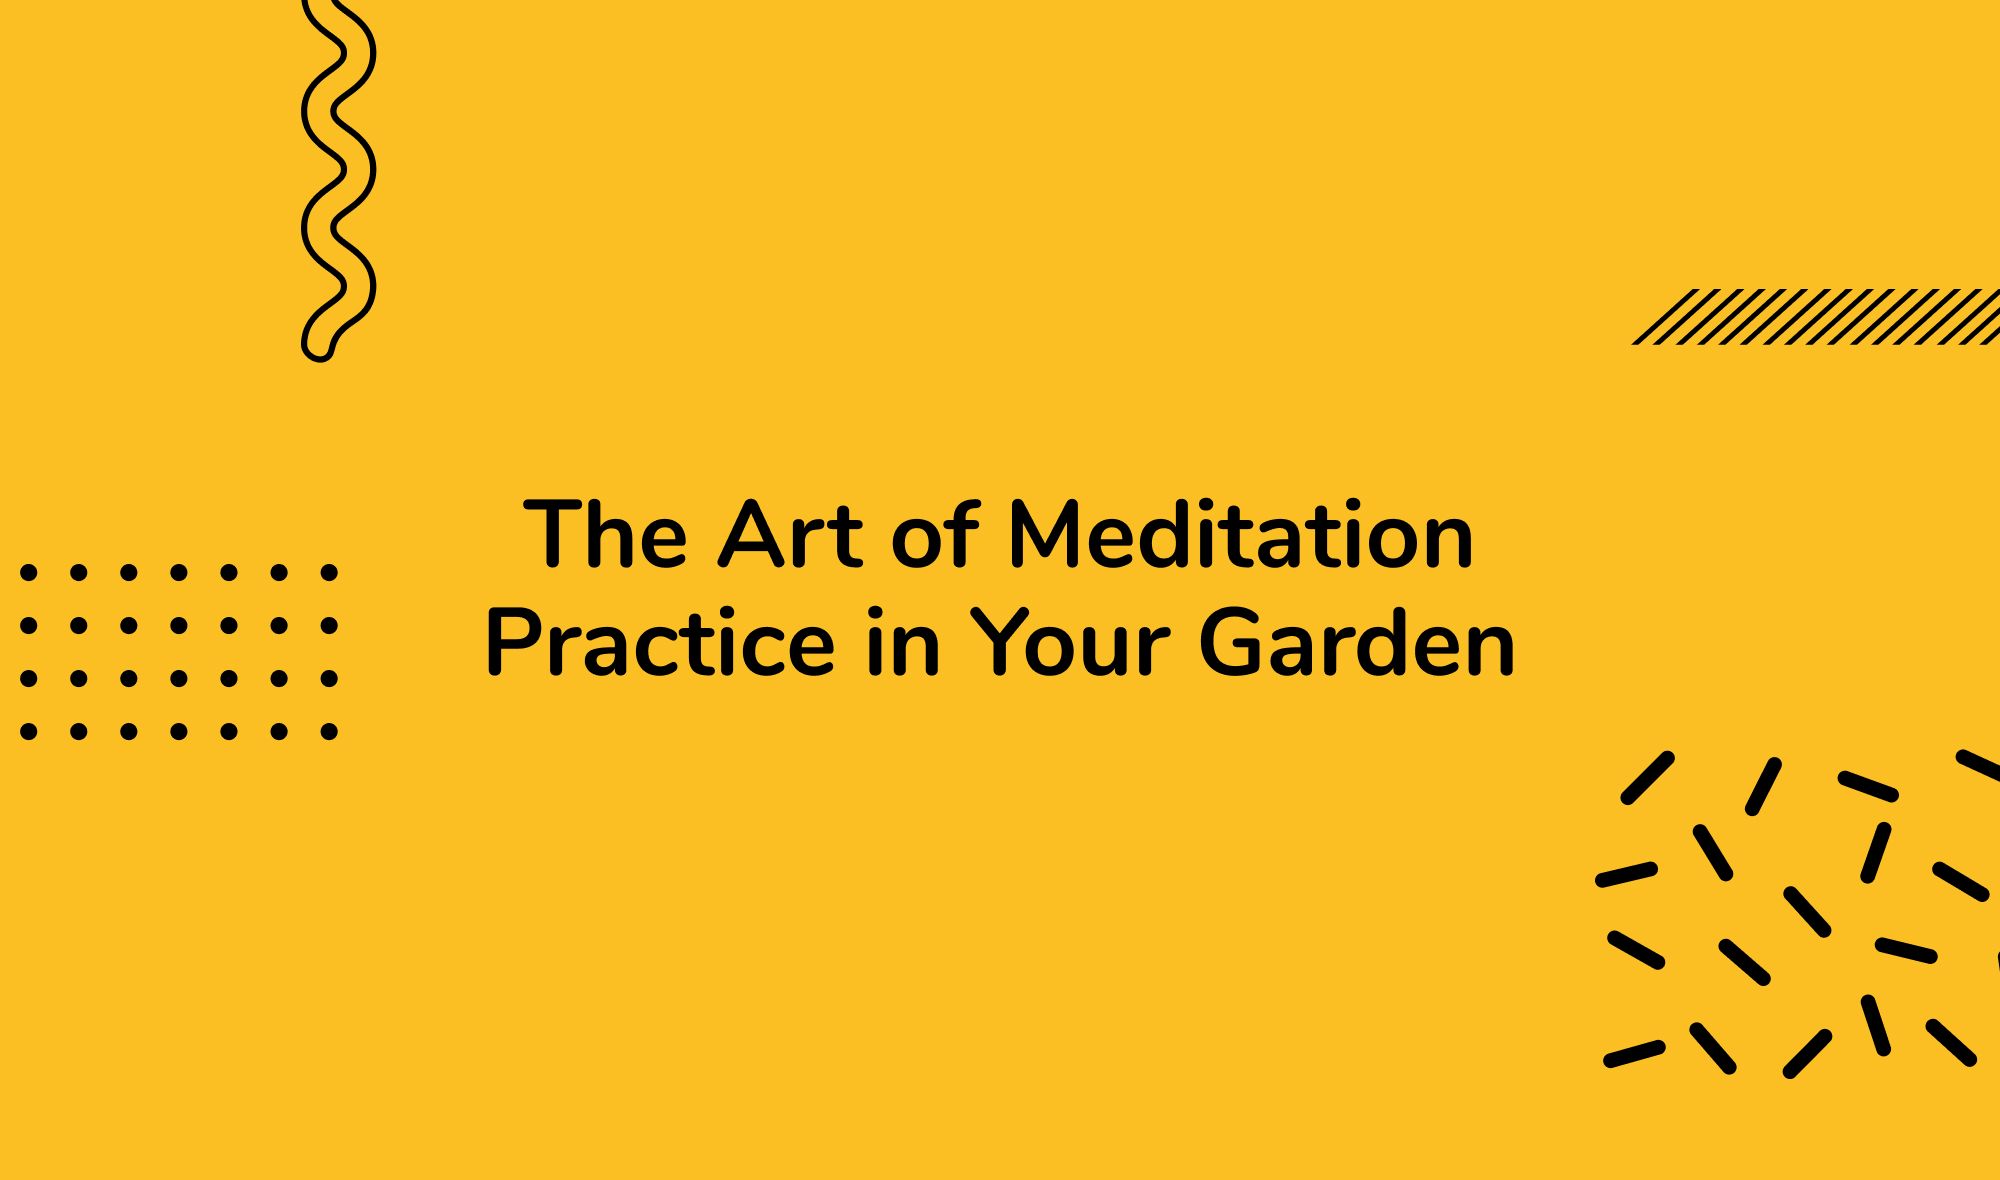 The Art of Meditation Practice in Your Garden